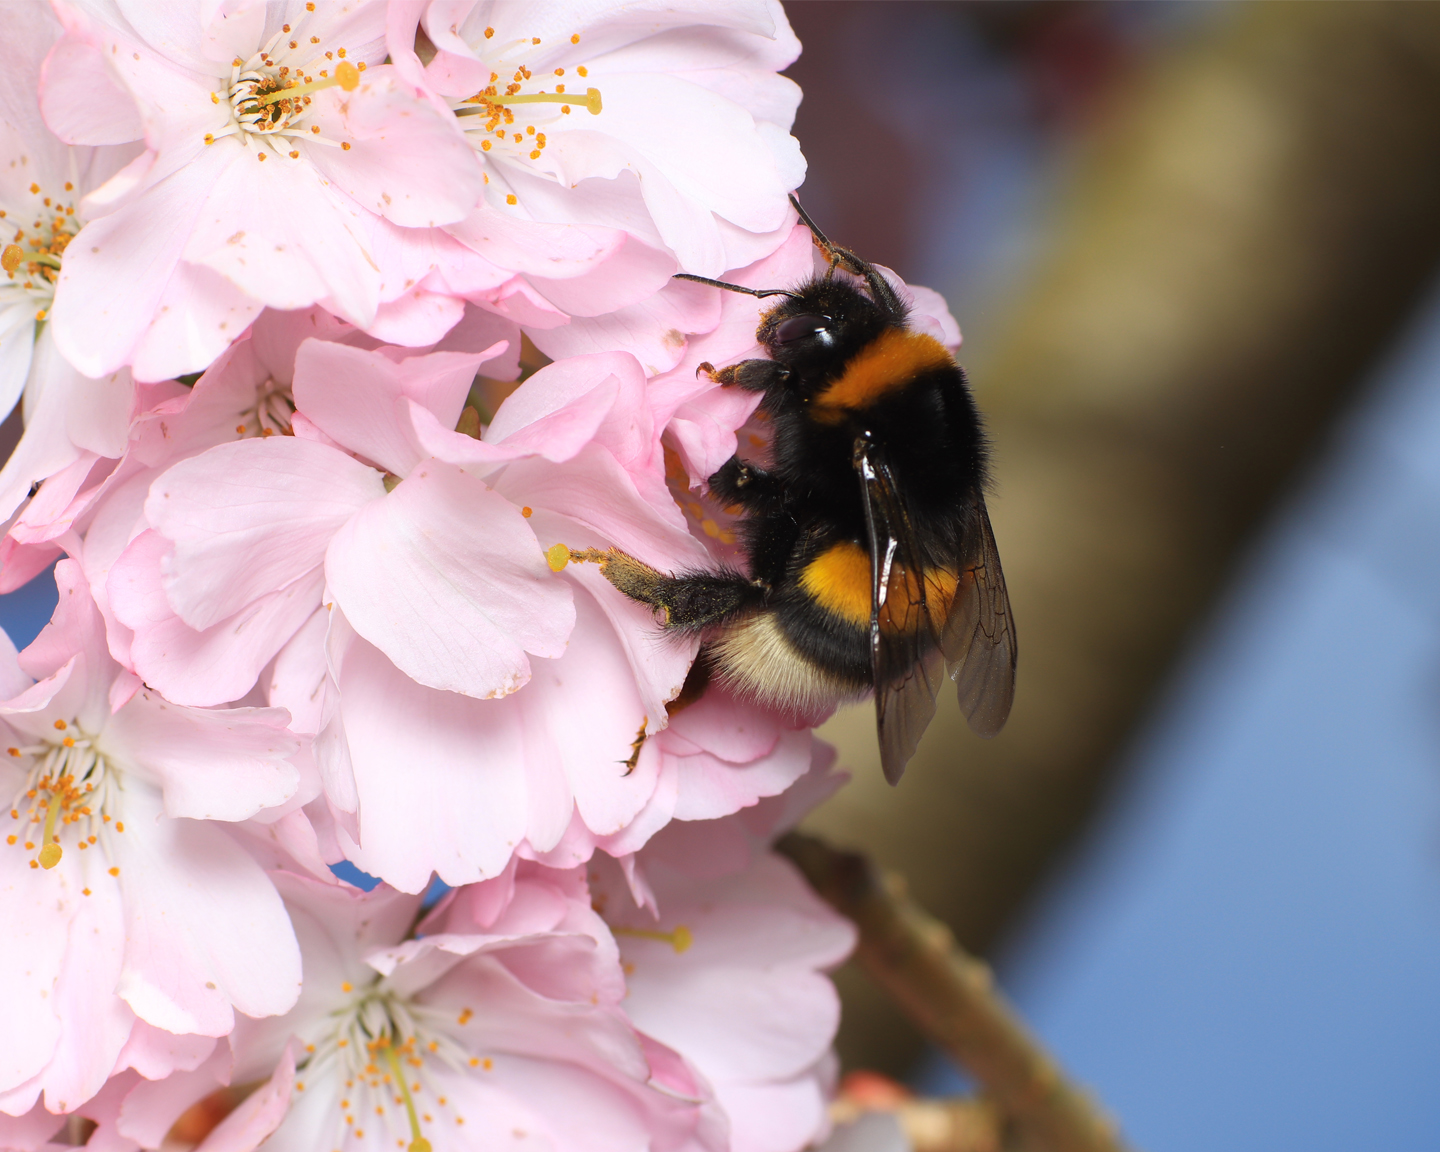 Il faut environ 6,5 abeilles domestiques pour polliniser autant qu’une reine de bourdon (Bombus sp. Photo ci-dessus Bombus terrestris) et 3,6 abeilles domestiques pour polliniser autant qu’une femelle d’andrène (Andrena sp.). En effet, A. mellifera dépose environ 4 fois moins de pollen que ces autres espèces et n’est pas capable de « buzzing »23. 